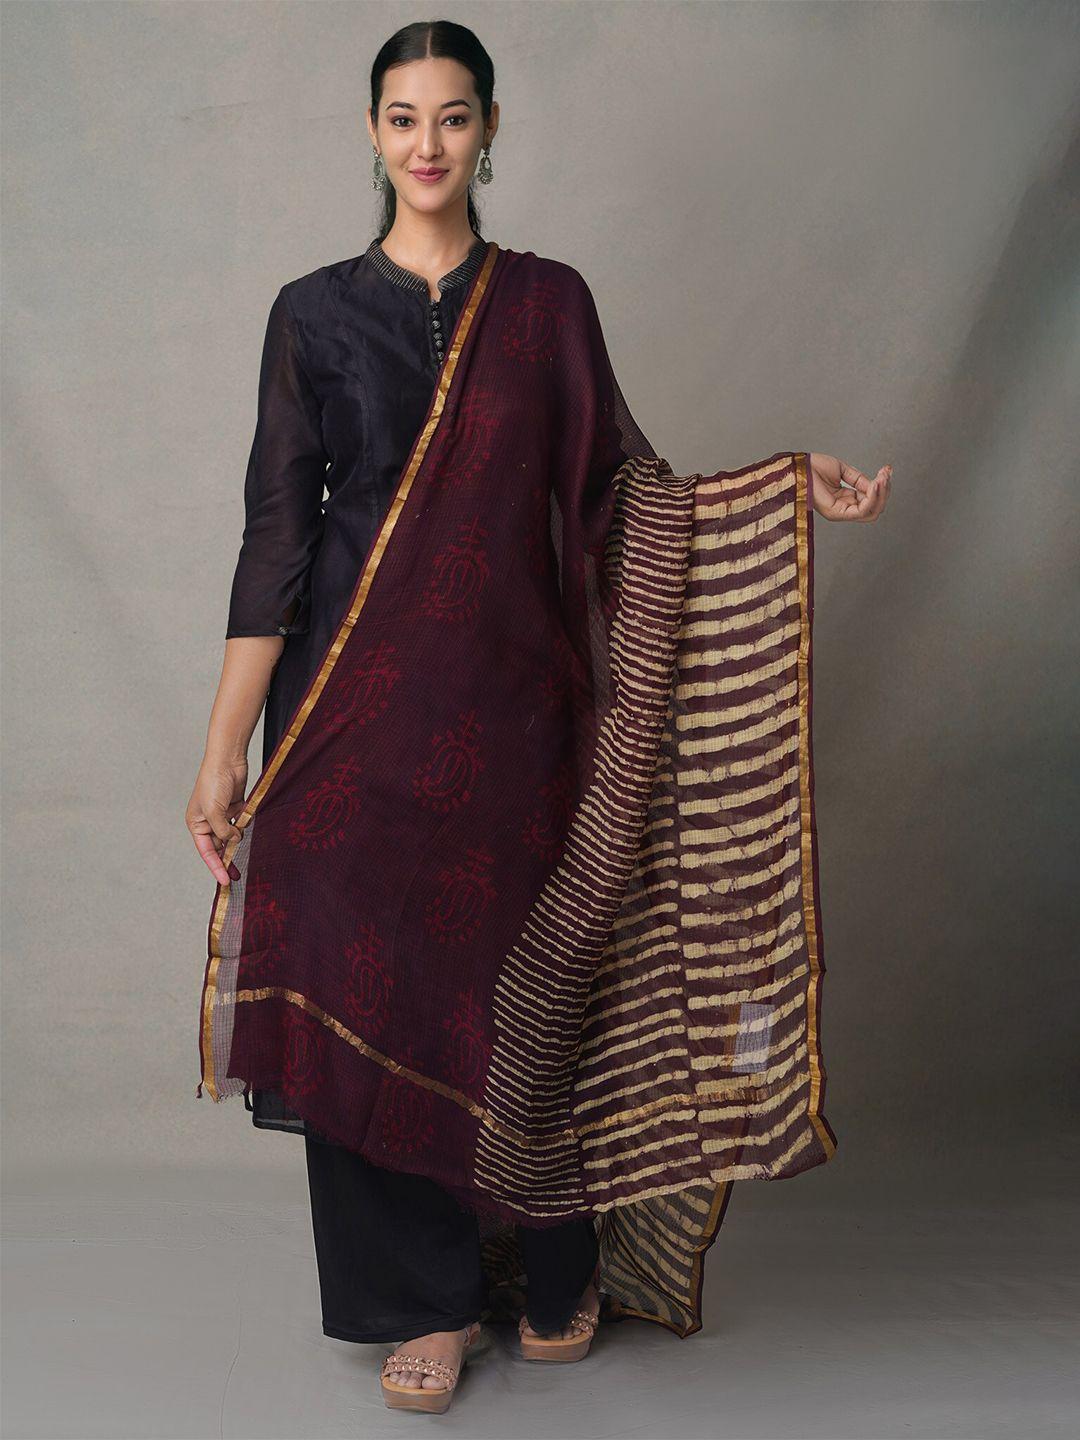 unnati silks women  maroon & gold-toned ethnic motifs printed dupatta